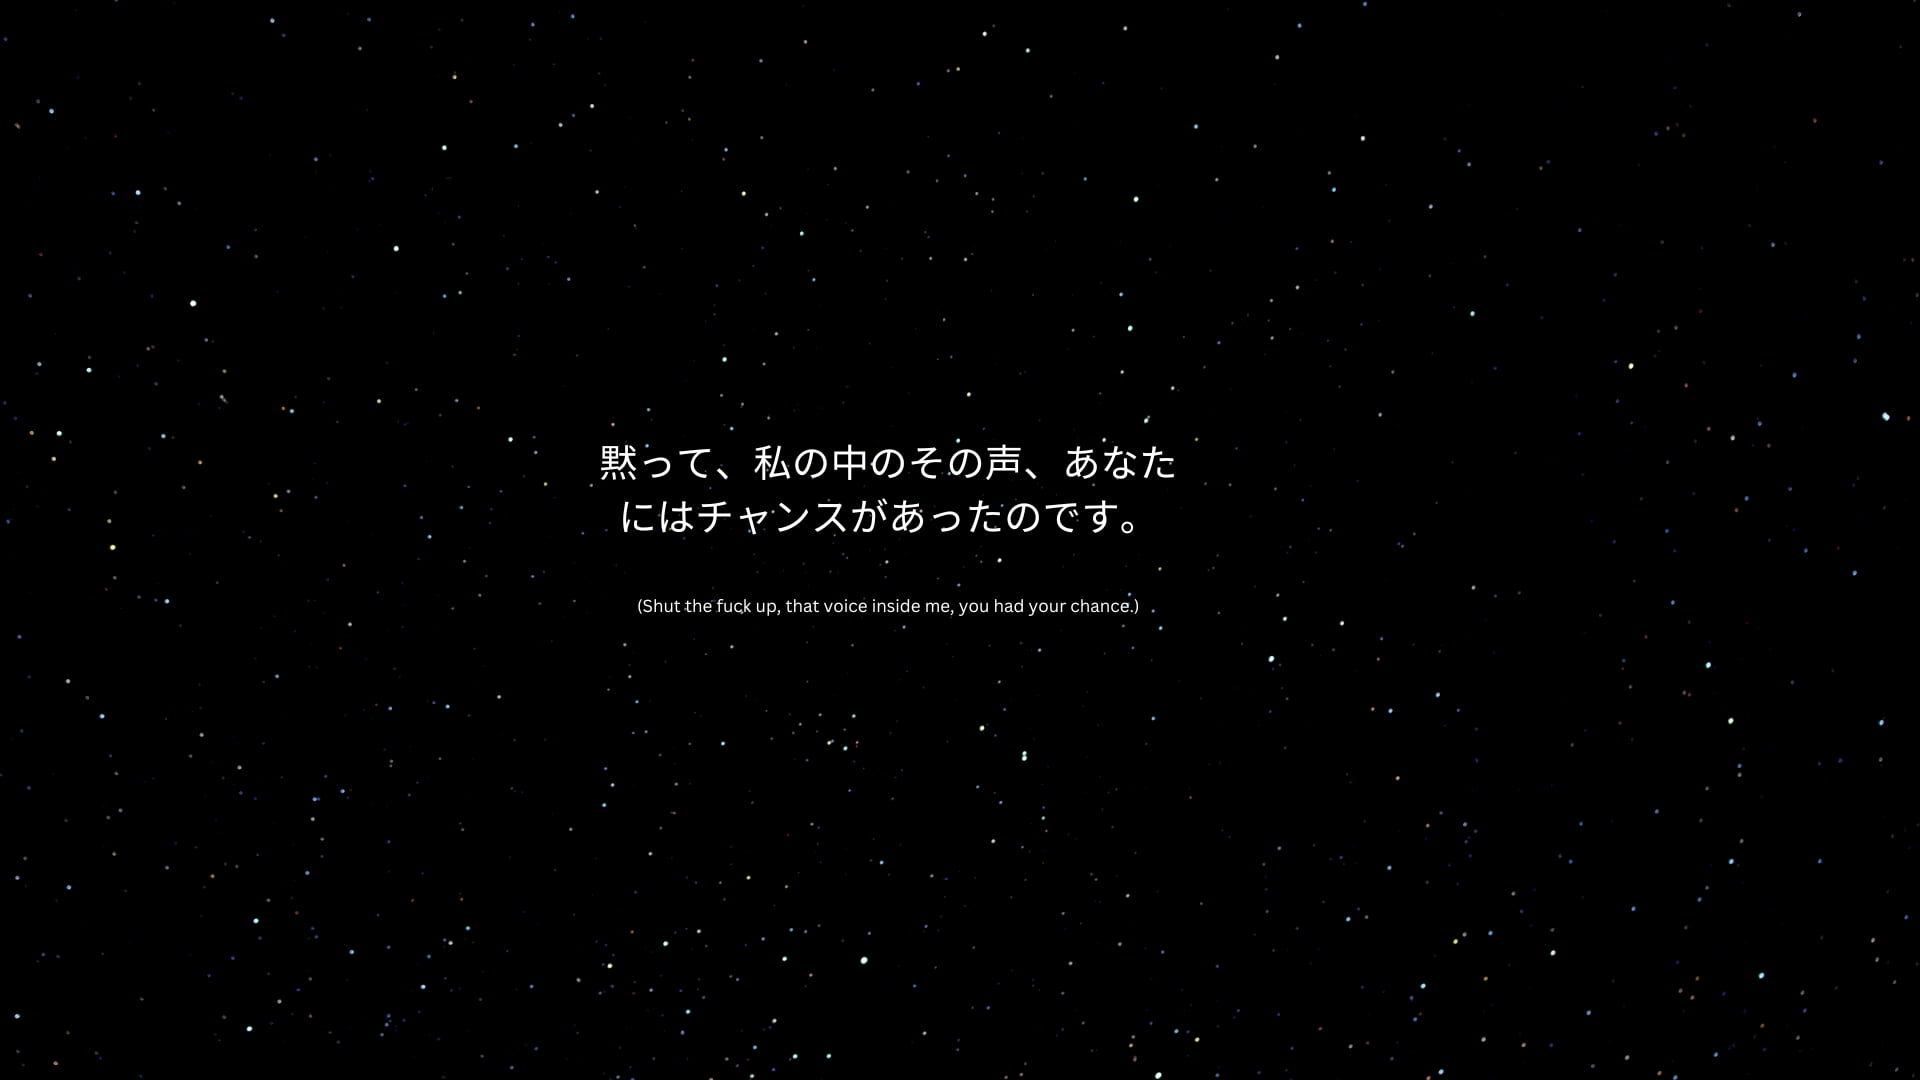 katakana, kanji, Space Battleship Yamato, black, dark, dark background